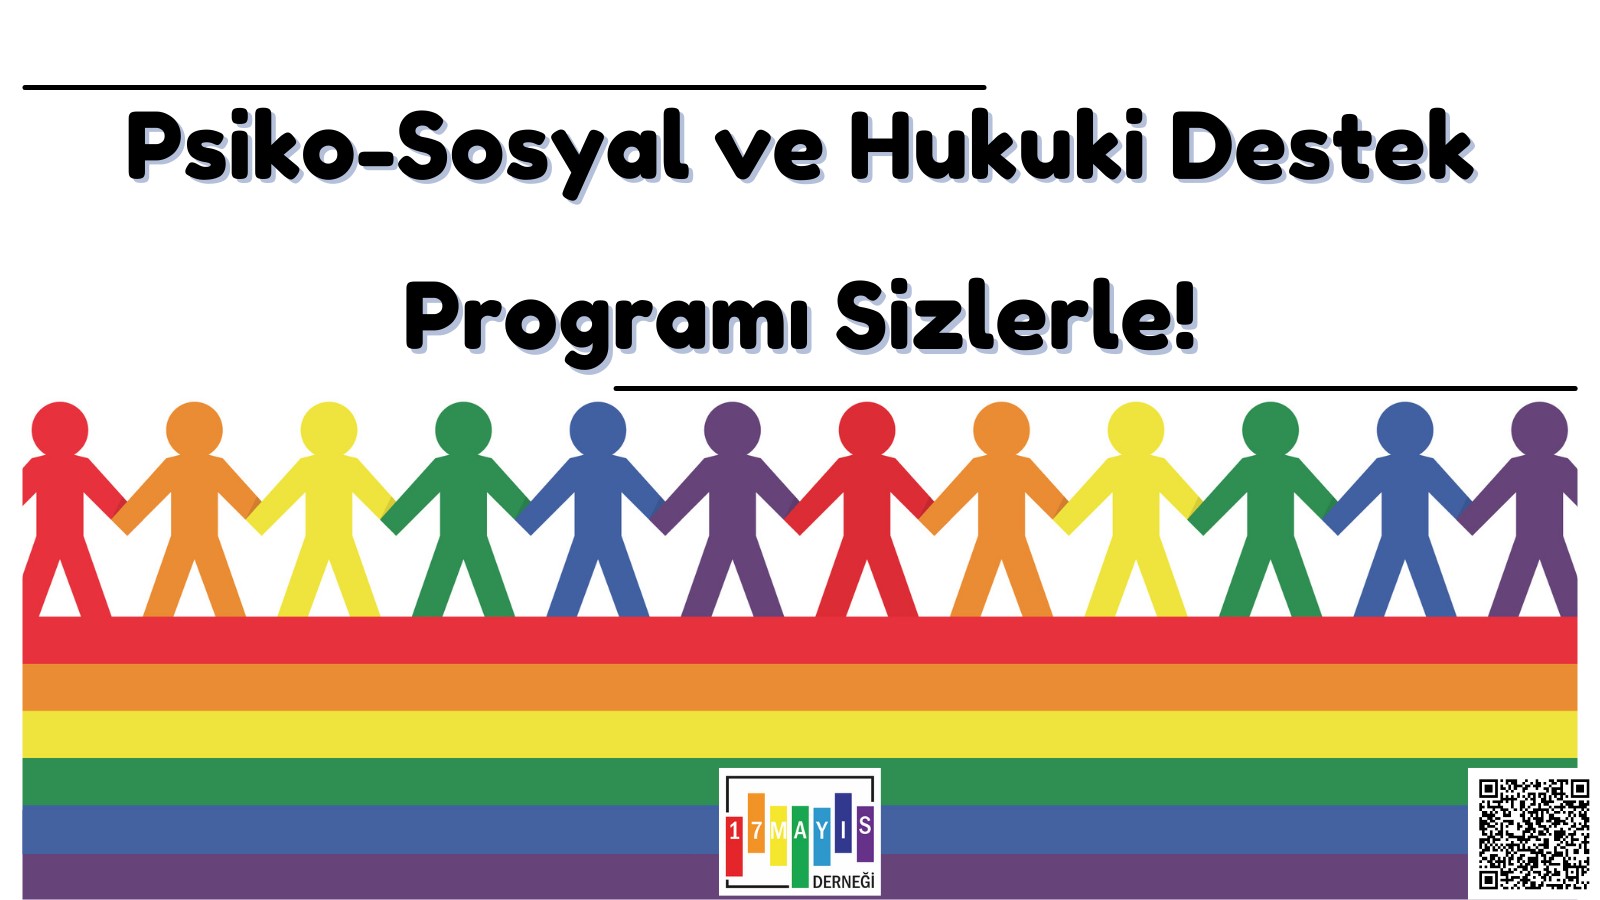 17 Mayıs'ın Psiko-Sosyal ve Hukuki Destek Programı başlıyor! Kaos GL - LGBTİ+ Haber Portalı